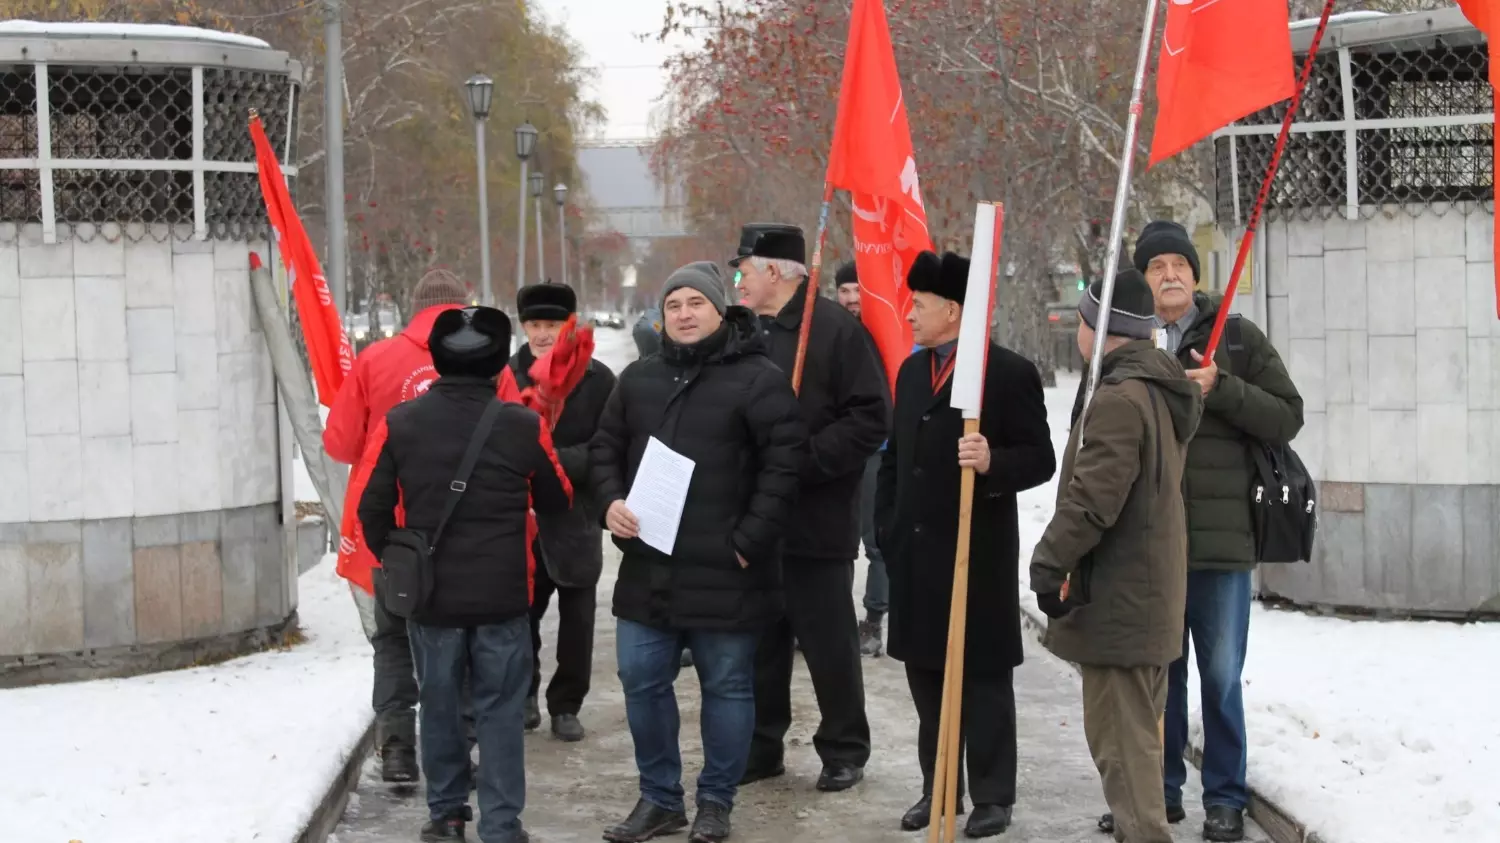 Колонна демонстрантов прошла по Красному проспекту